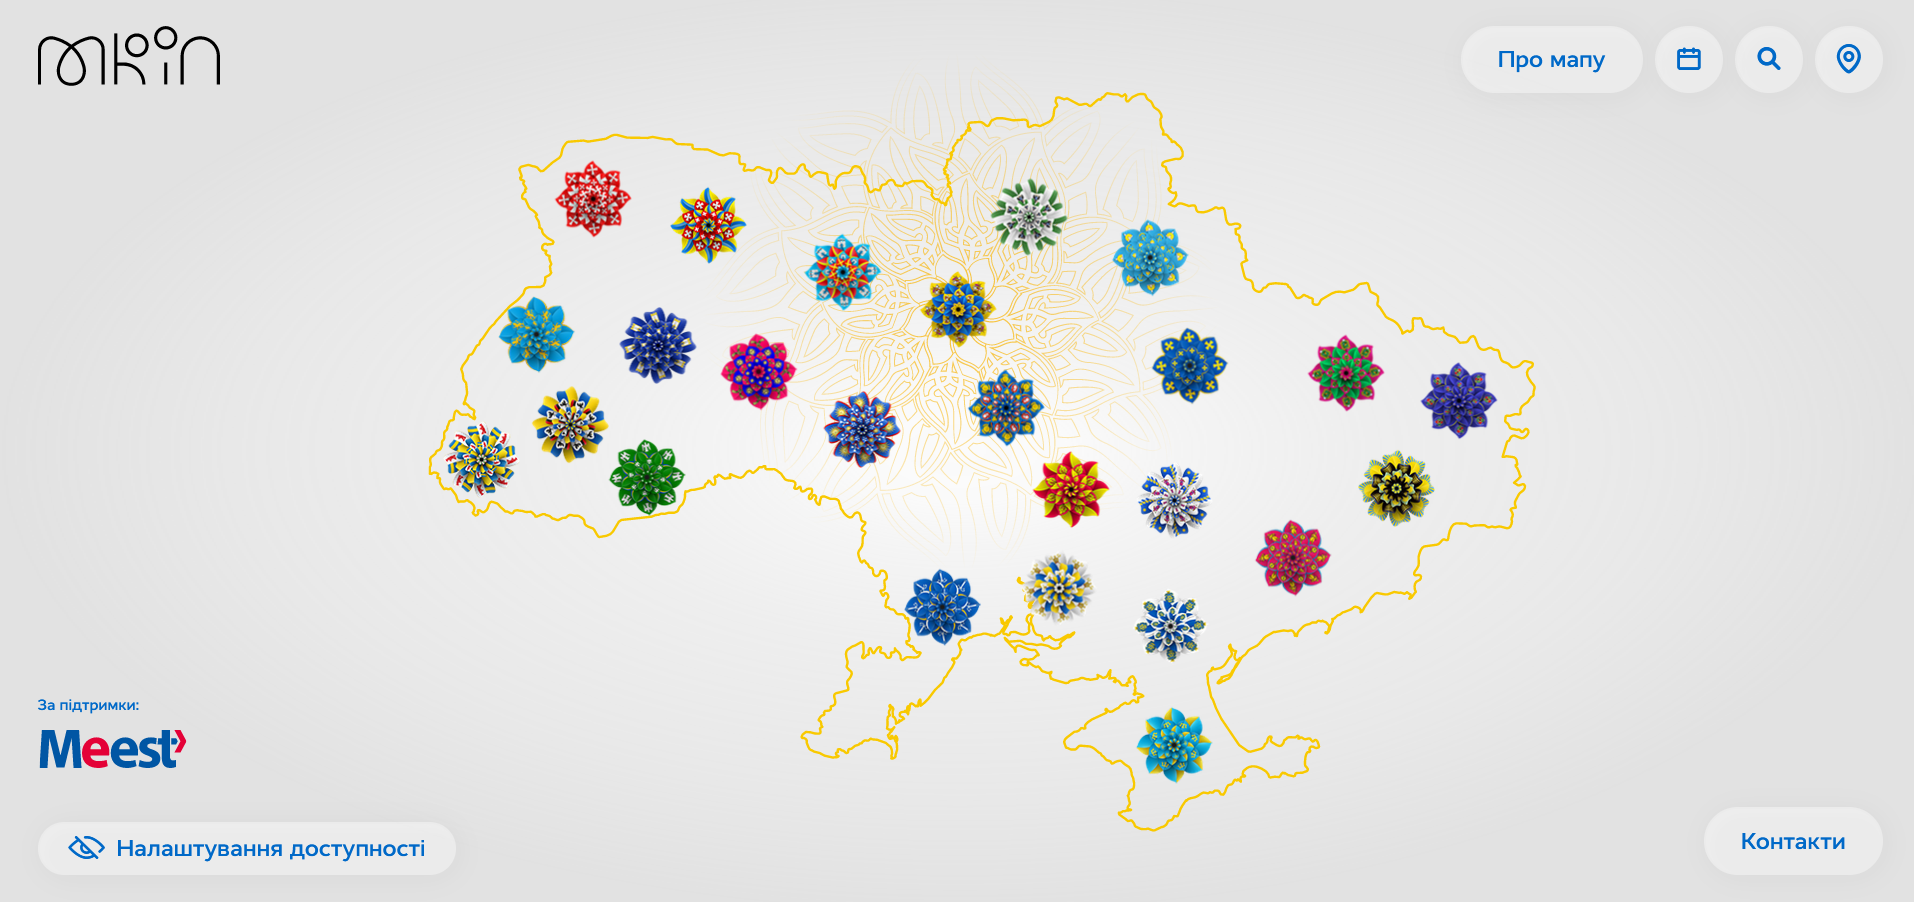 Мапа відображає усі регіони України